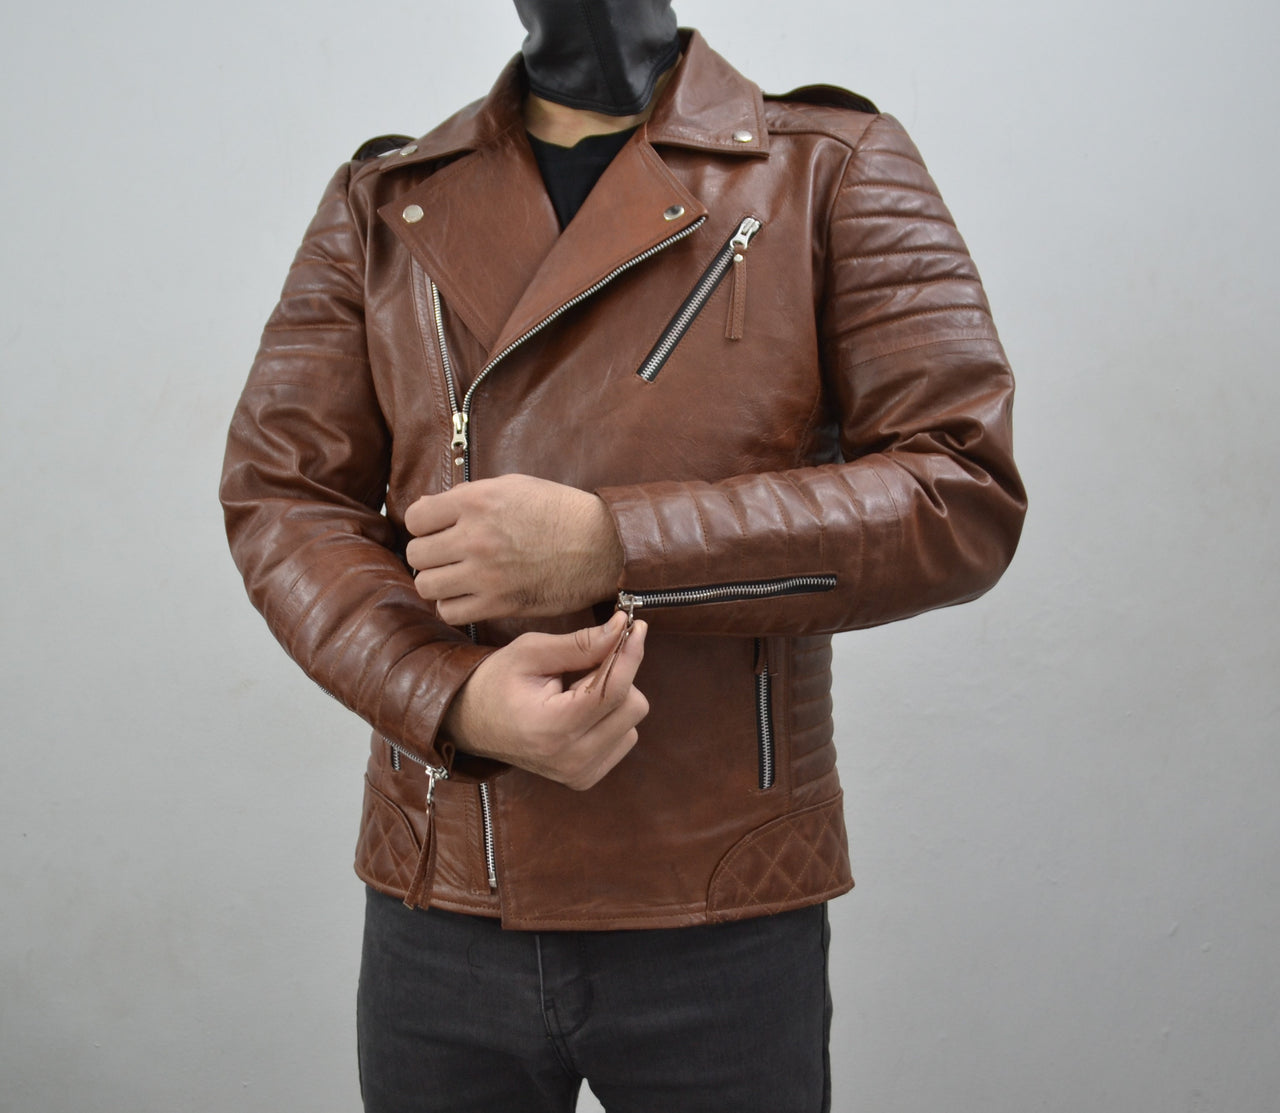 Men's Brando Antique Brown Motorcycle Geniune Leather Biker Jacket